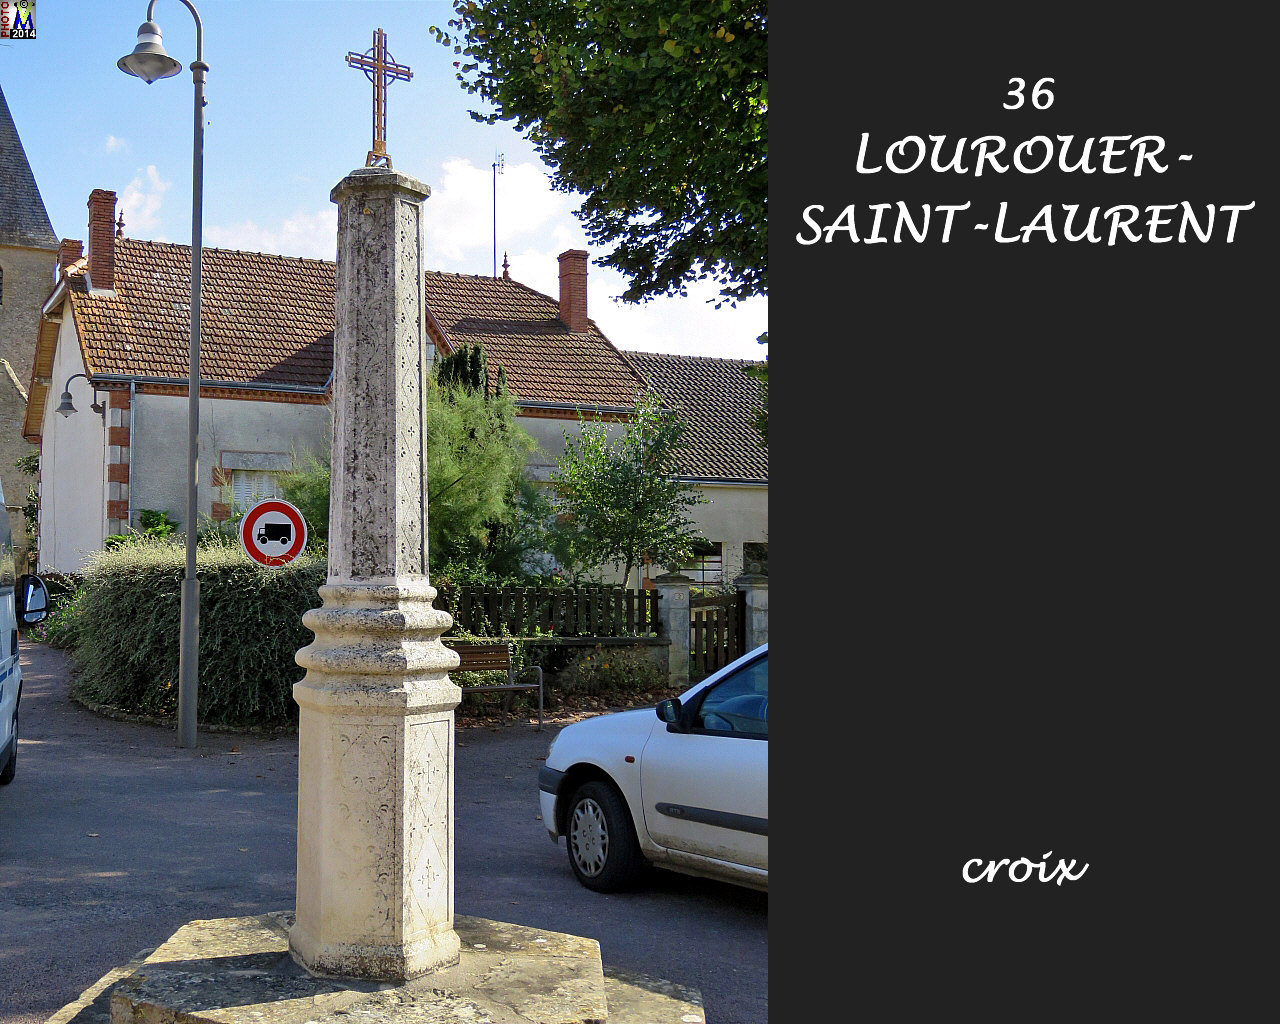 36LOUROUER-St-LAURENT_croix_100.jpg